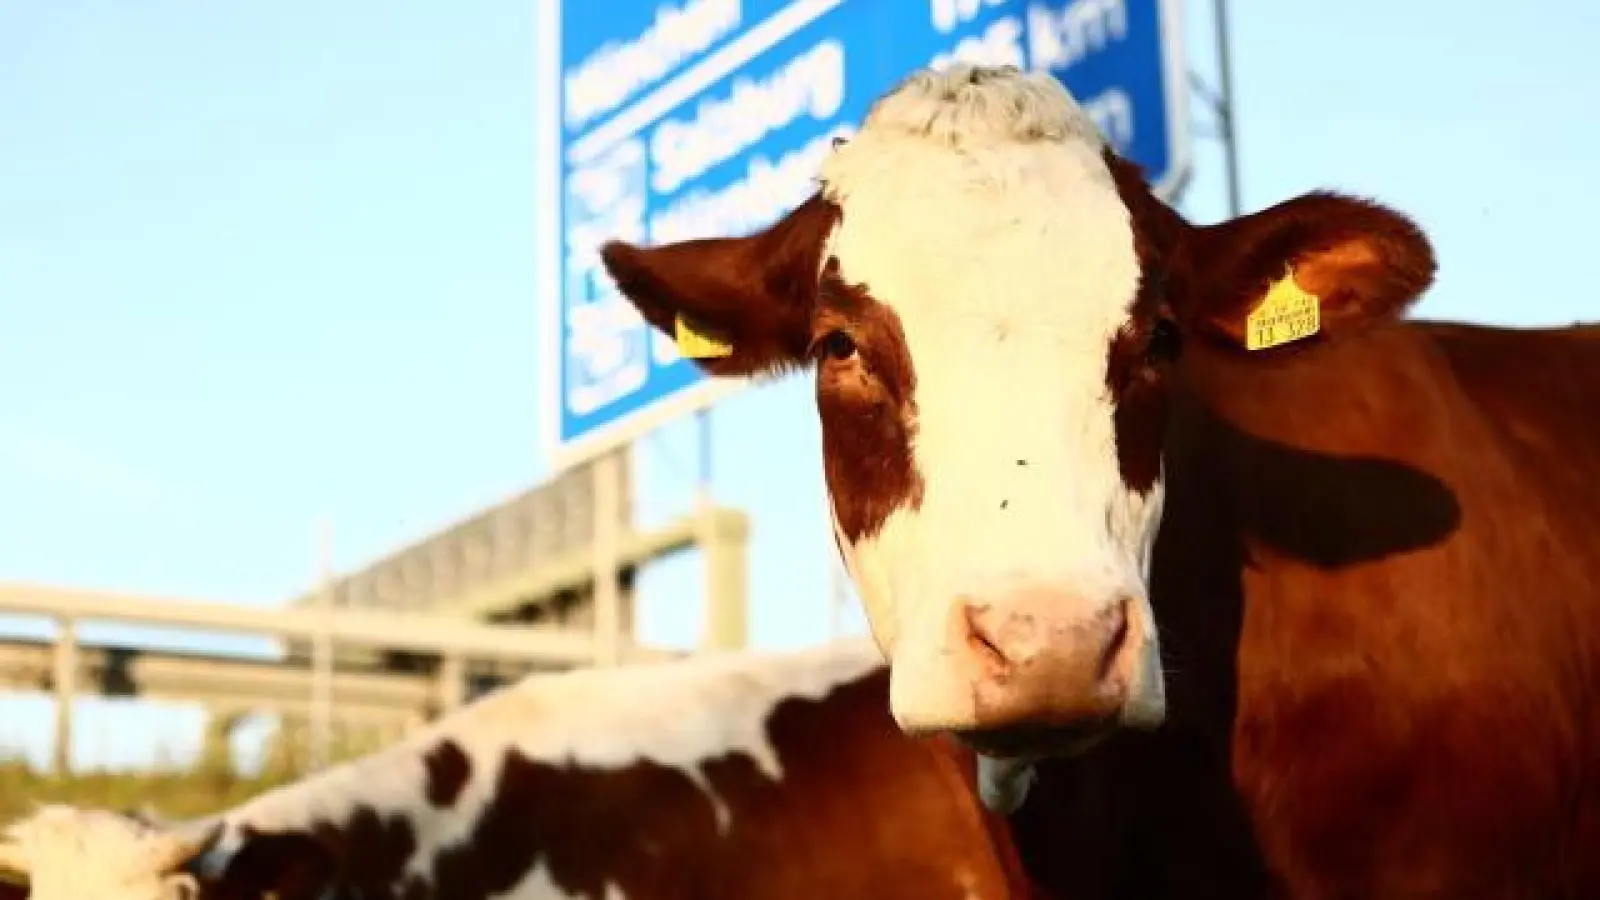 Direkt an der Autobahn stehen die Rinder der Familie Haag, völlig unbeeindruckt vom Straßenlärm, mit dem auch die Kälber aufwachsen. Wenn es den Tieren doch zu viel werden sollte, finden sie Schutz hinter den zahlreichen Lärmschutzwänden.